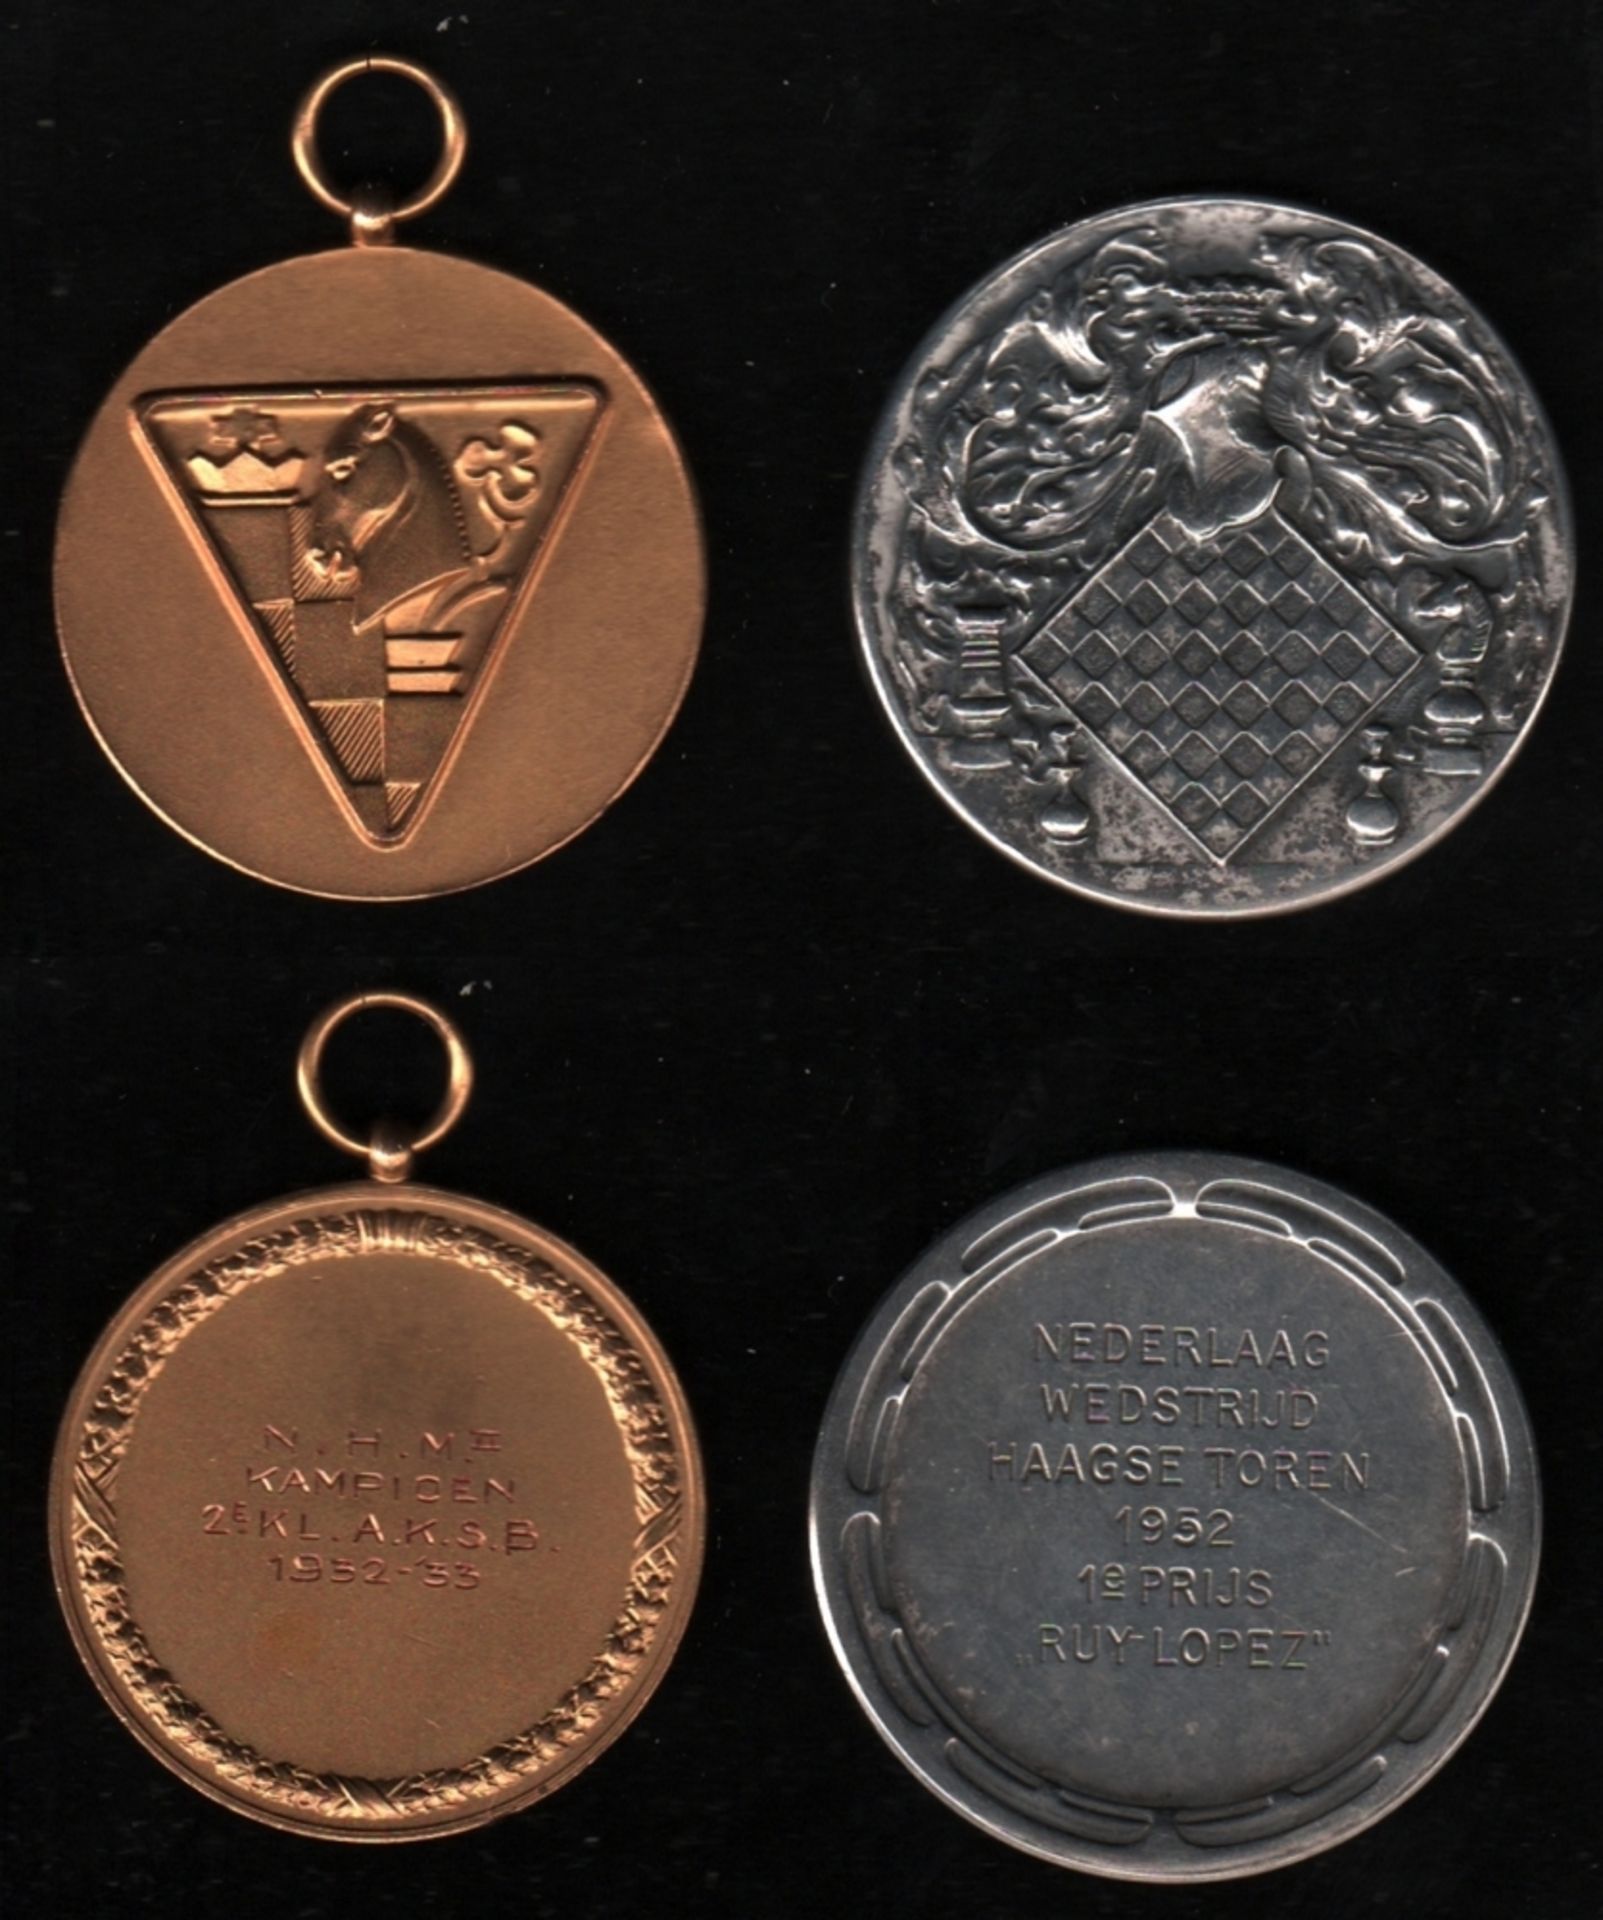 Medaille. Springerfigur. Medaille aus Metall mit Tragöse, ca. 1933. Vorderseite: Schachbrettteil mit